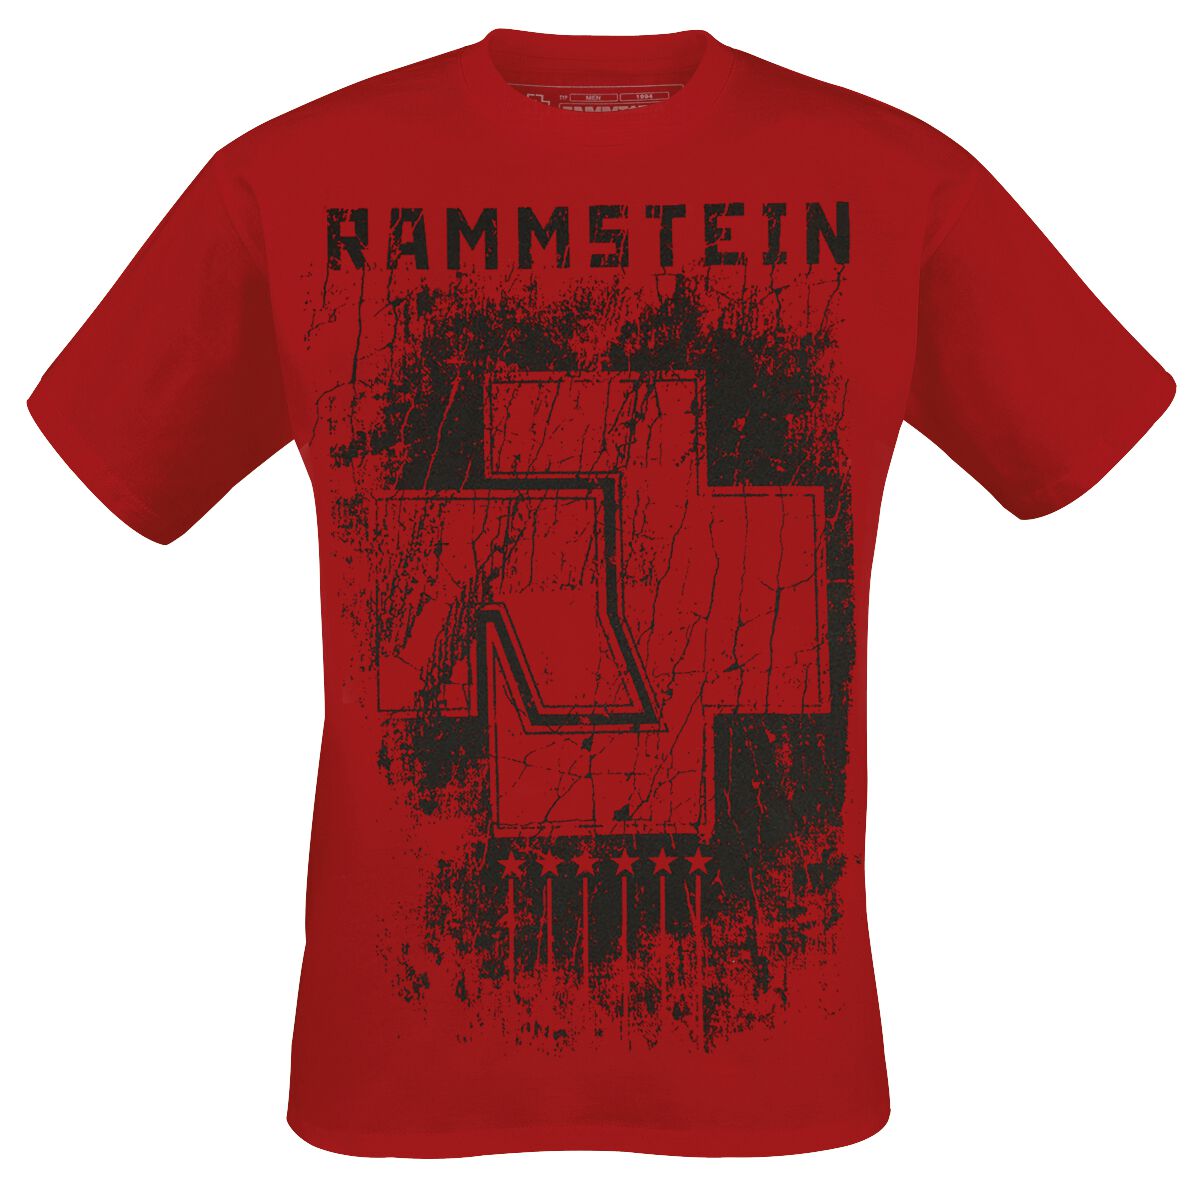 Rammstein T-Shirt - 6 Herzen - S bis XXL - für Männer - Größe XXL - rot  - Lizenziertes Merchandise!